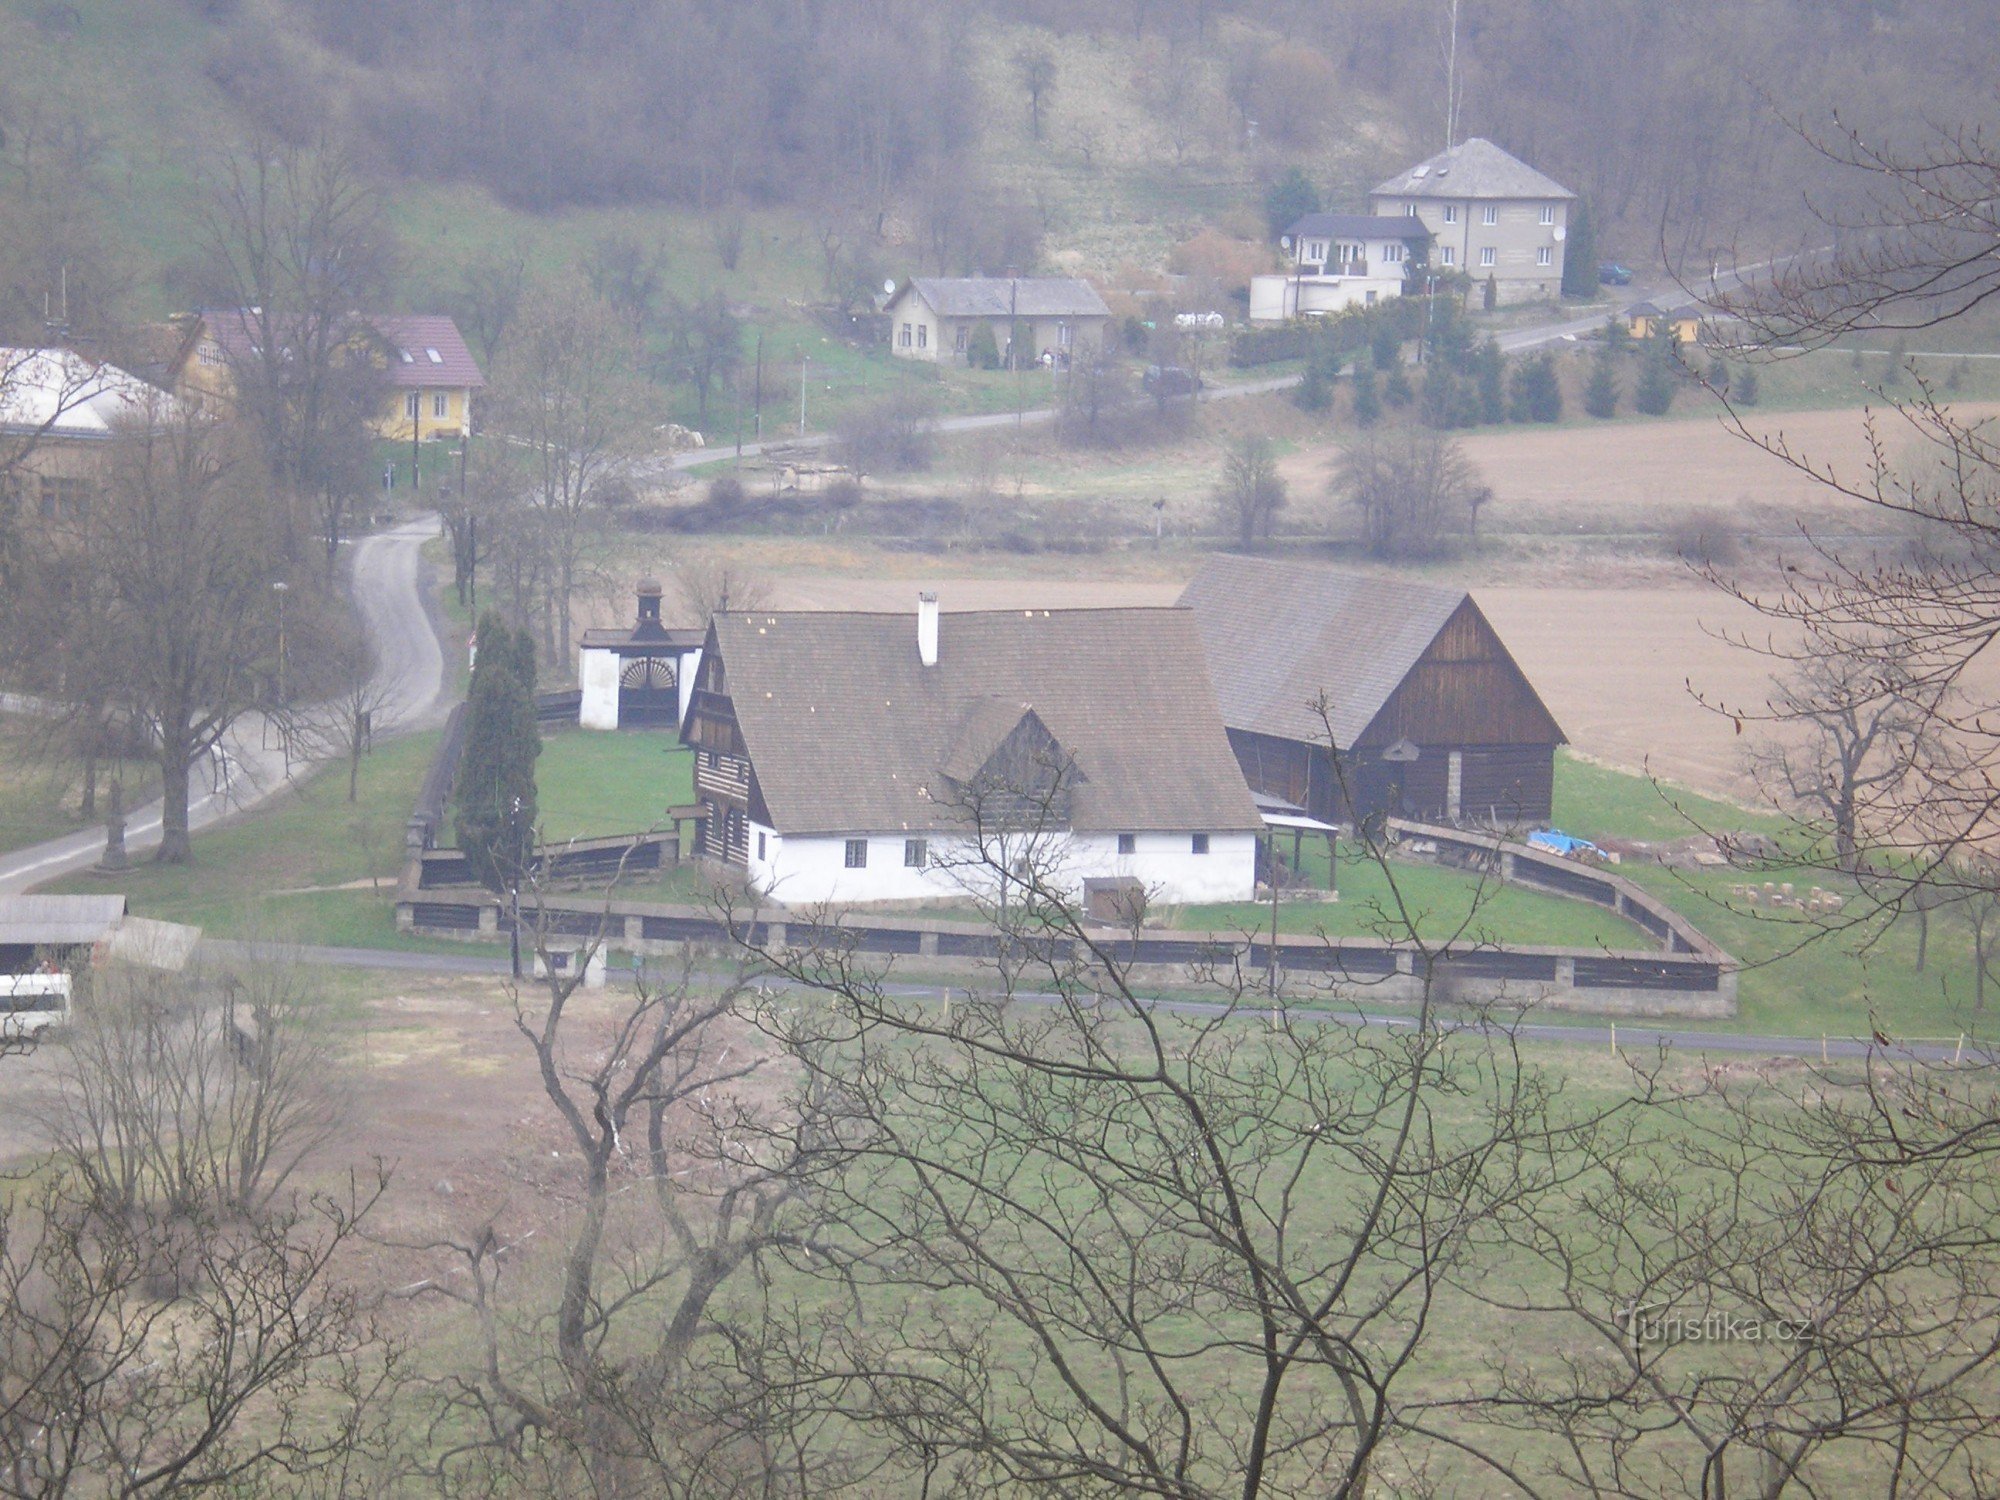 Dlaska's farm